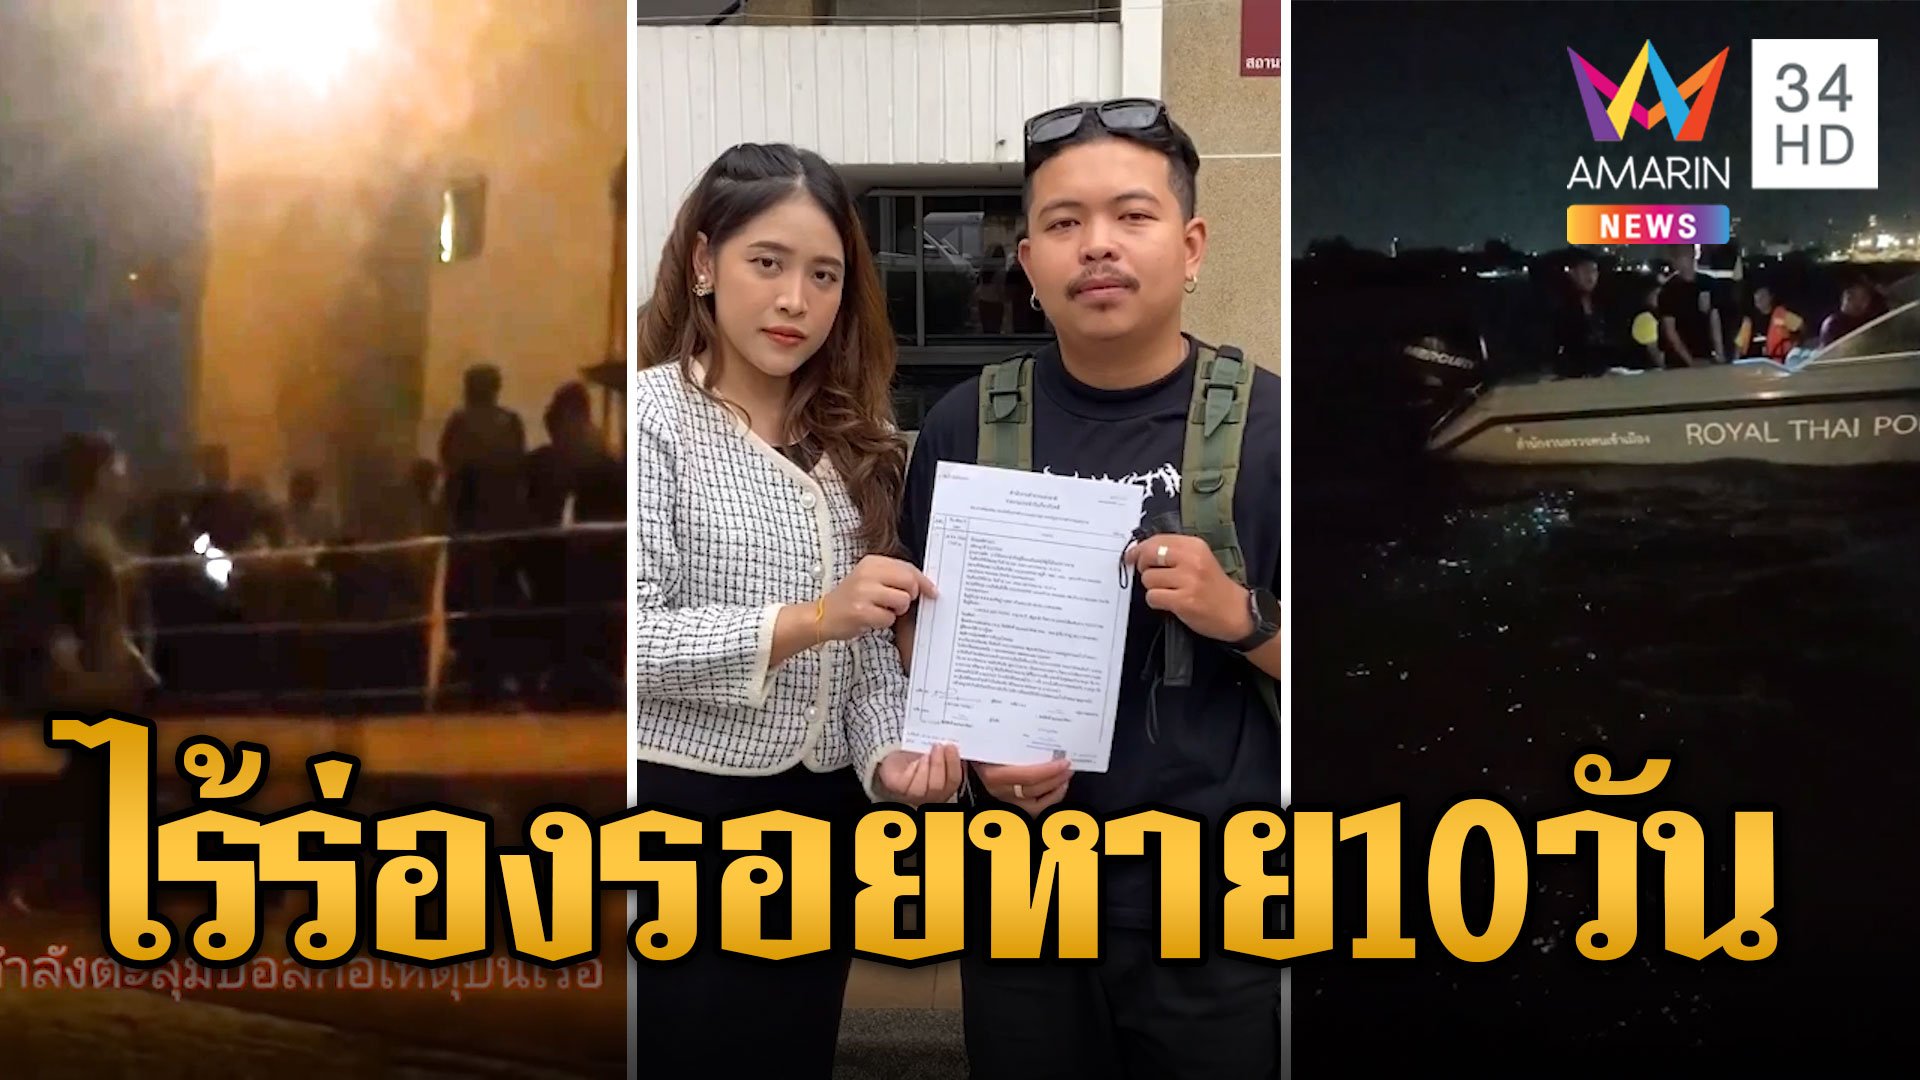 ไร้ร่องรอยโฟร์แมนไทยหาย 10 วัน หลังถูกไล่ฟันโดดน้ำจมหาย | ข่าวเที่ยงอมรินทร์ | 31 ธ.ค. 66 | AMARIN TVHD34